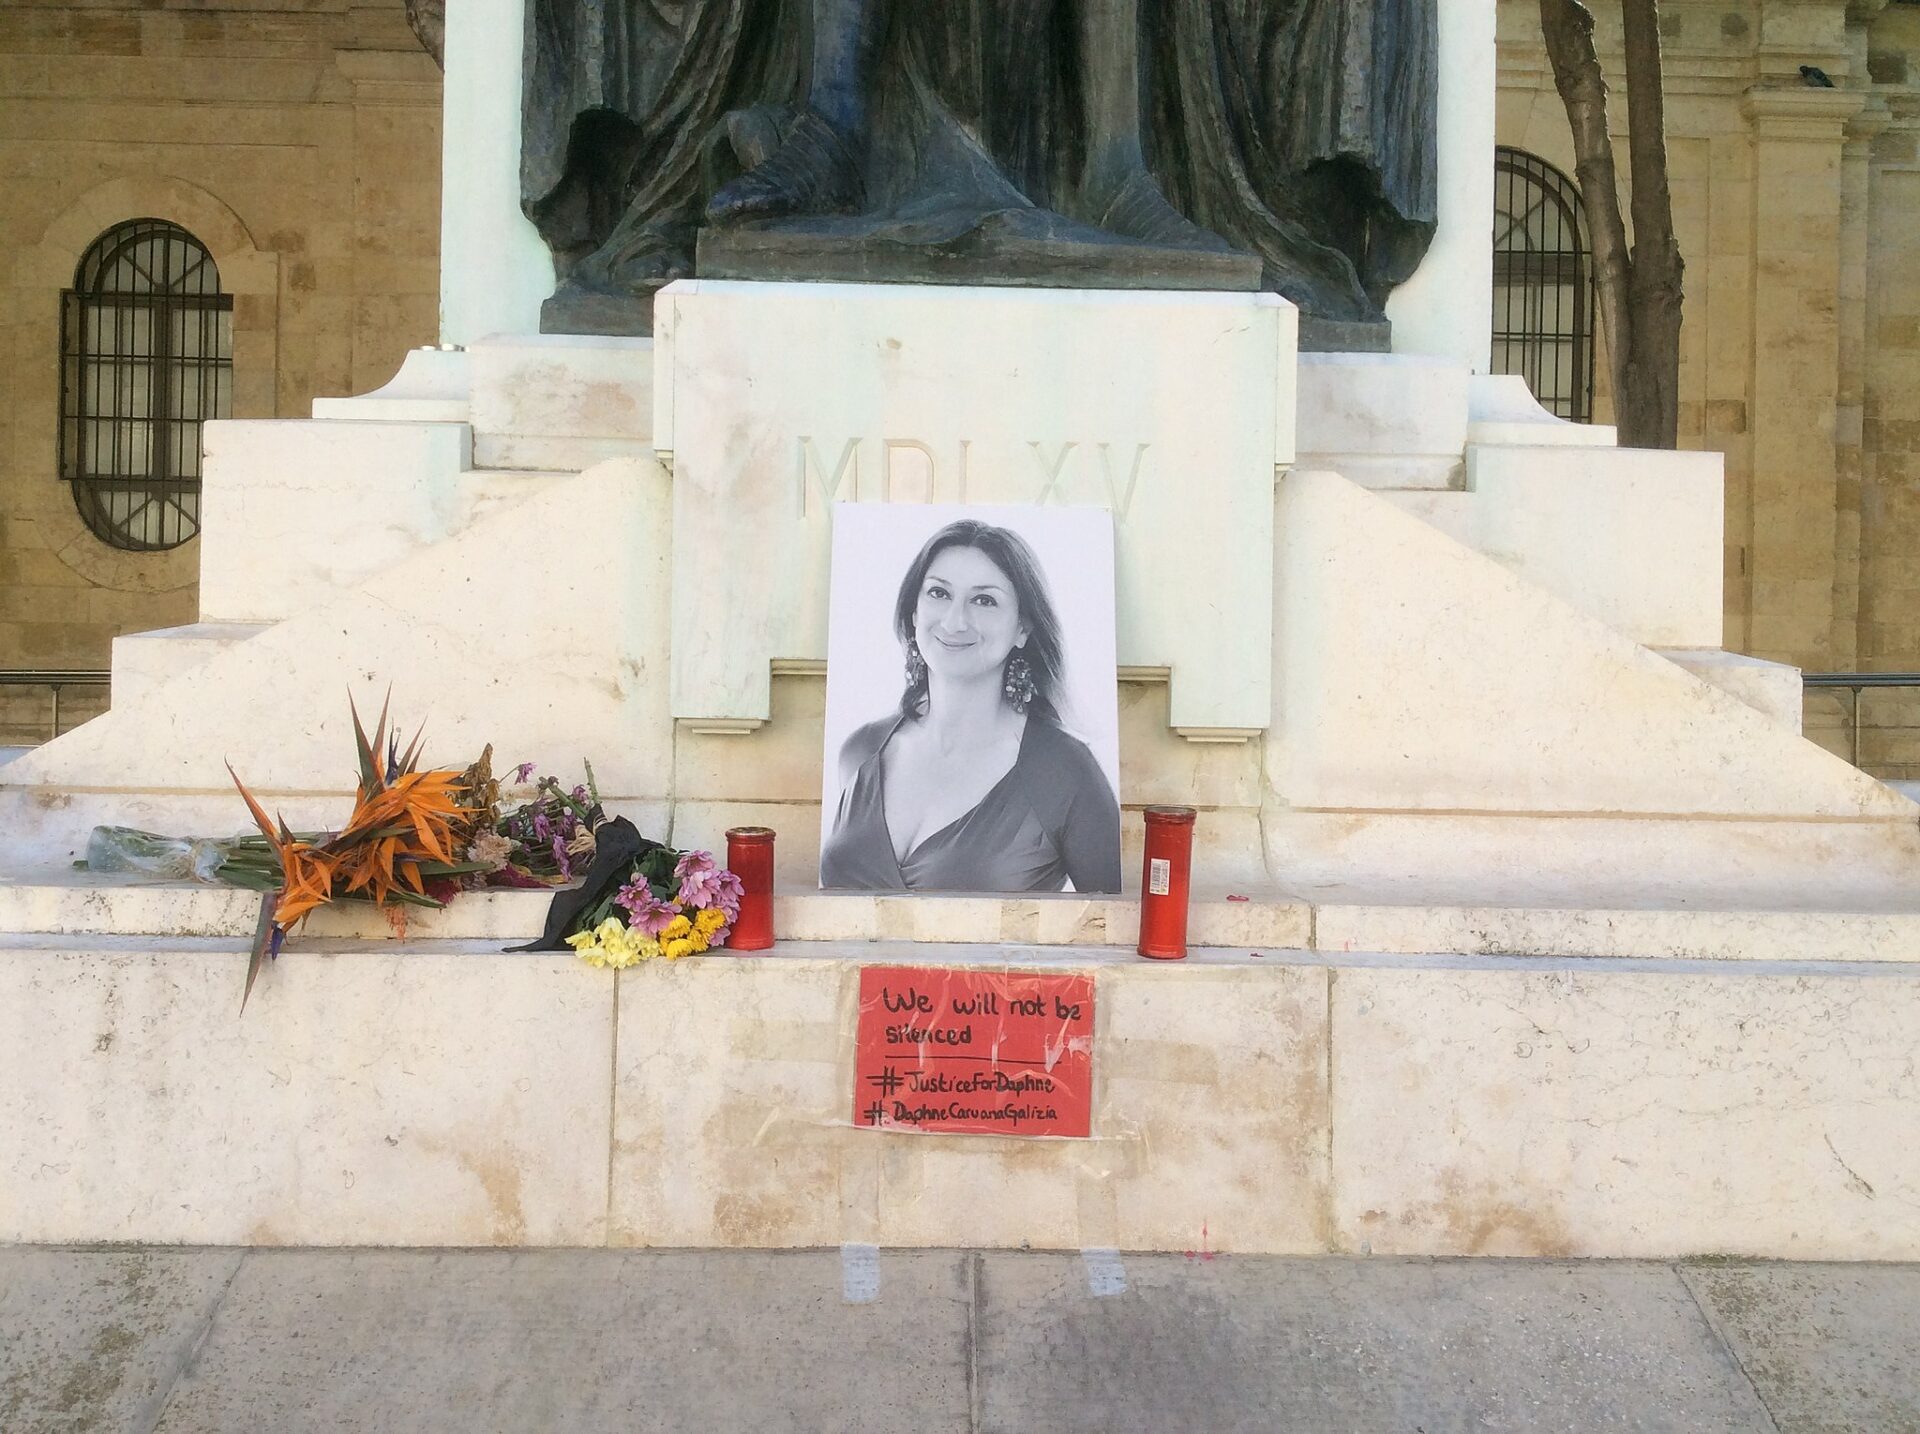 La journaliste Daphne Caruana Galizia, assassinée en 2017, est devenue le symbole de la lutte anti-corruption à Malte | © Continentaleurope/wikimedia/CC BY-SA 4.0